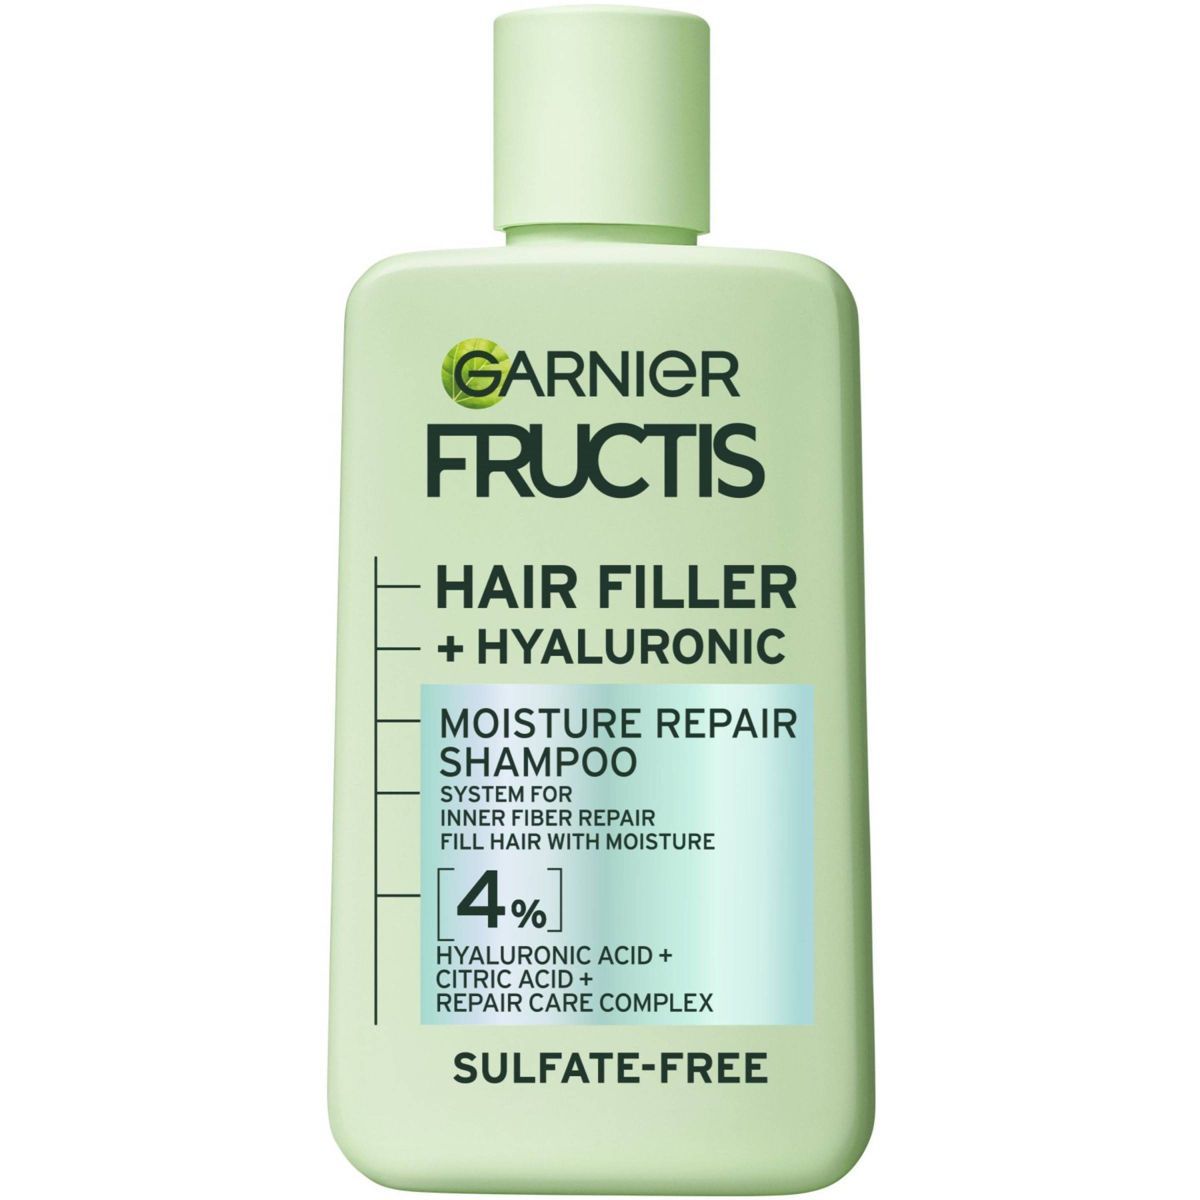 Garnier Fructis Hair Fillers Moisture Repair Shampoo for Curly Hair - 10.1 fl oz | Target